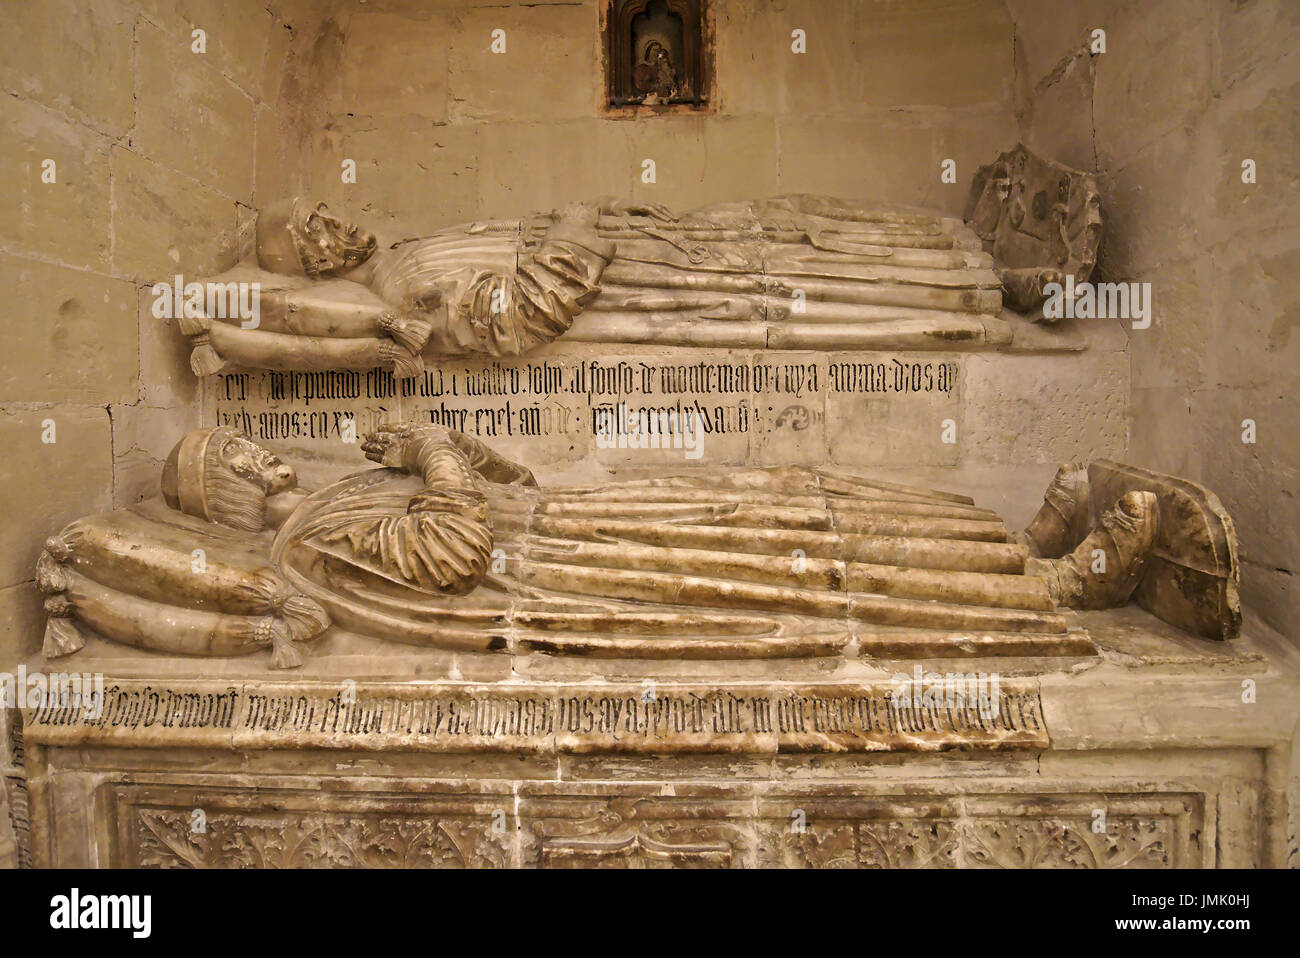 'Señores de Montemayor' chapel in Cuenca cathedral, C.La Mancha, Spain. XVI century. 'Juan Alfonso de Montemayor el Viejo y el Mozo' sepulchres. Stock Photo